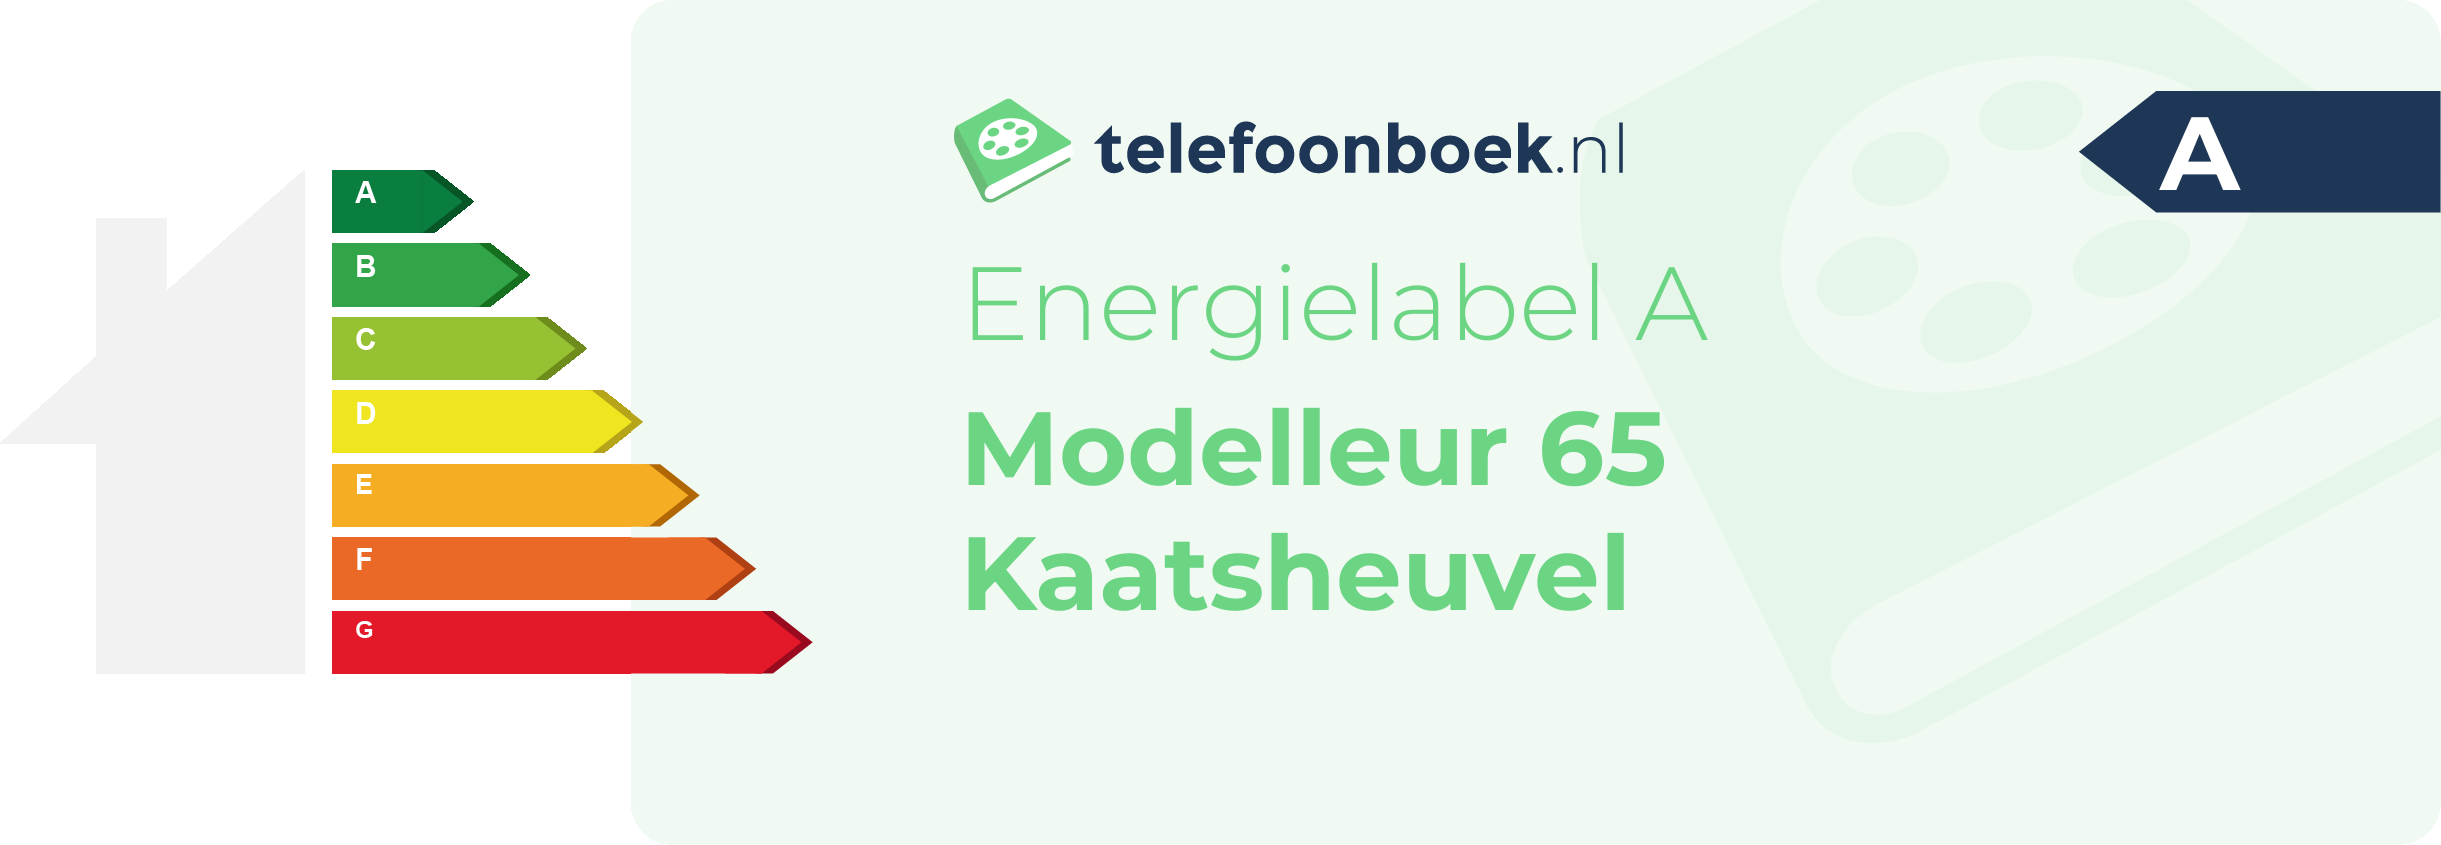 Energielabel Modelleur 65 Kaatsheuvel